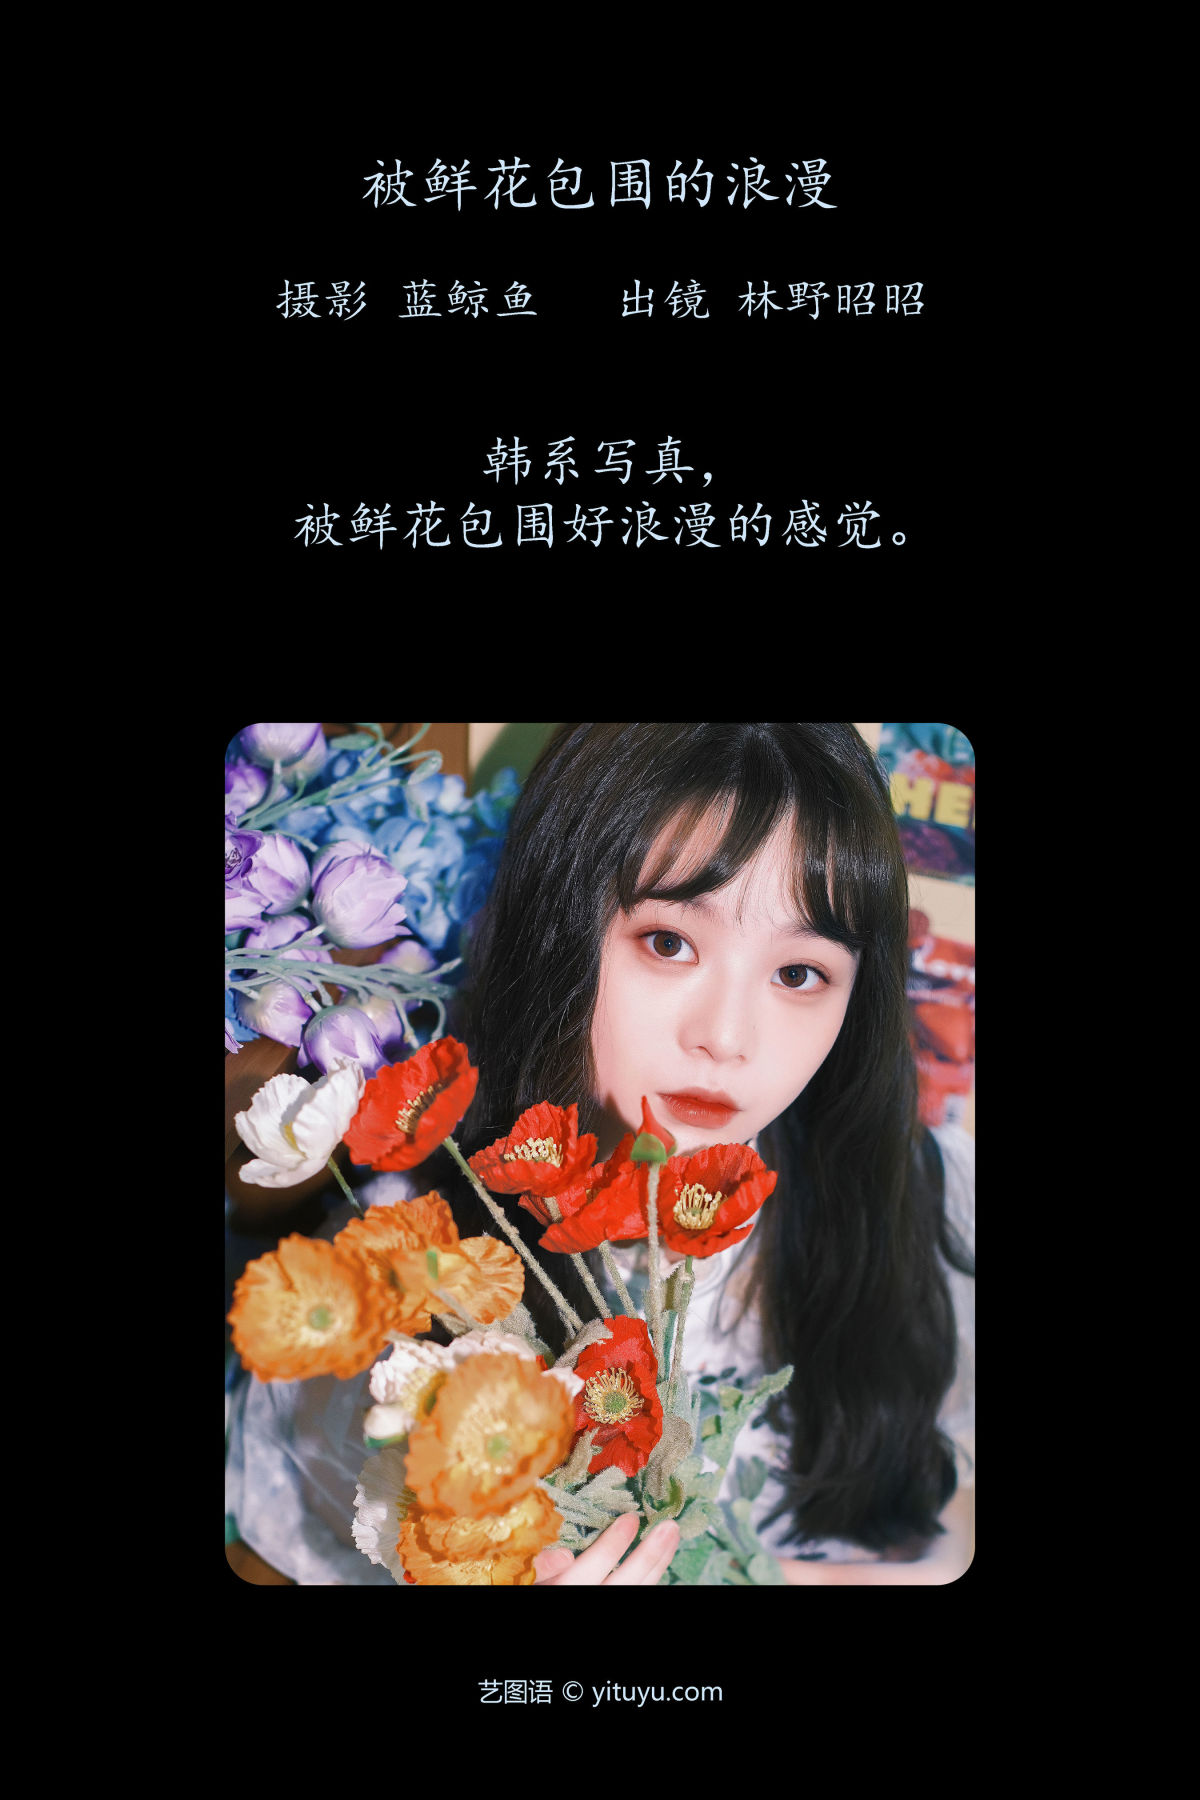 蓝鲸鱼_林野昭昭《被鲜花包围的浪漫》美图作品图片2